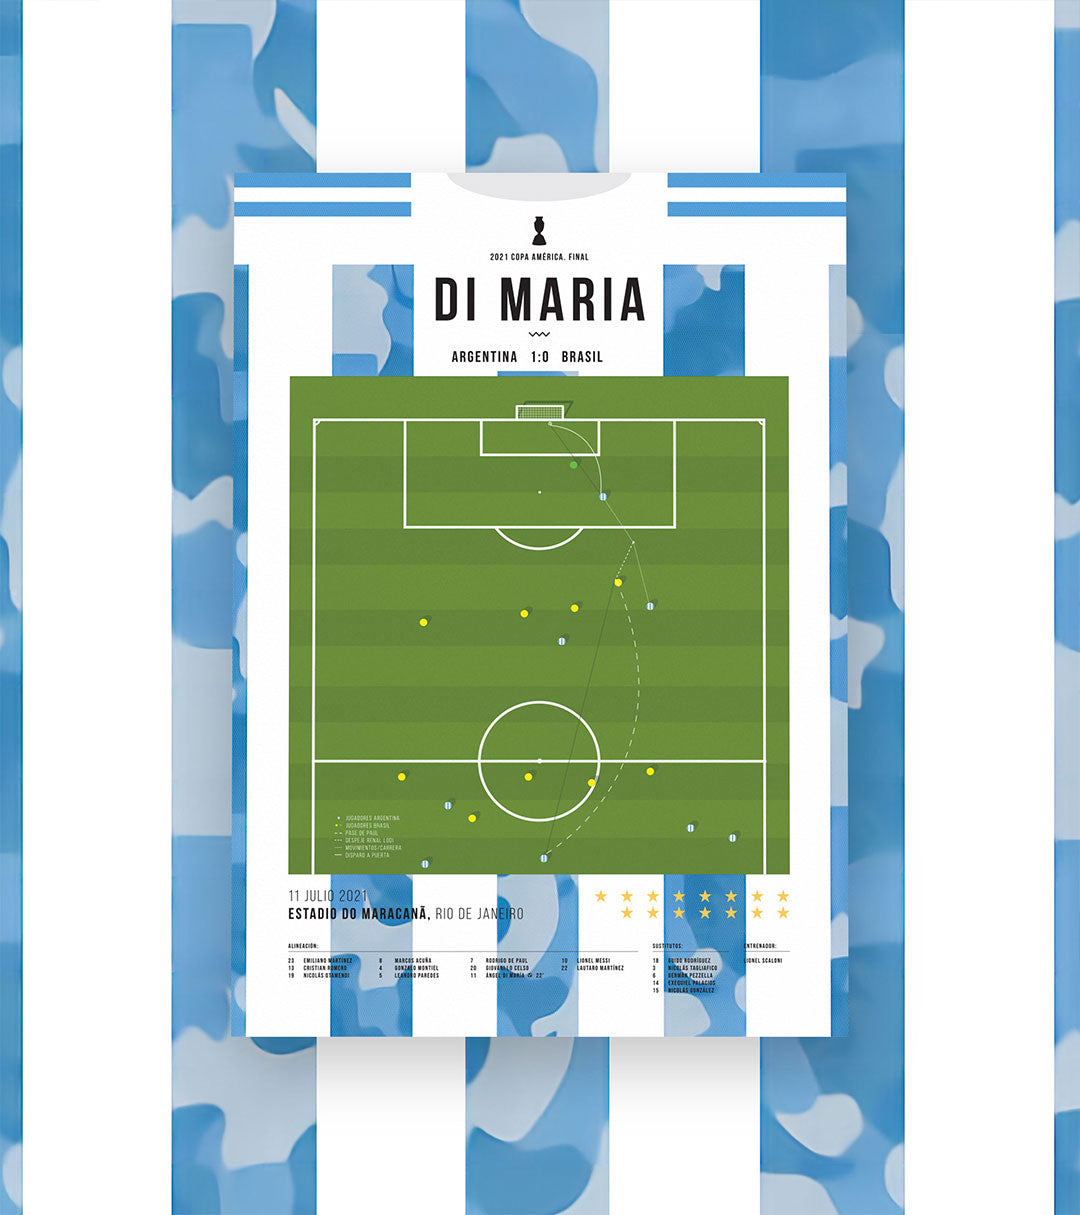 Di Maria Goal vs Brazil